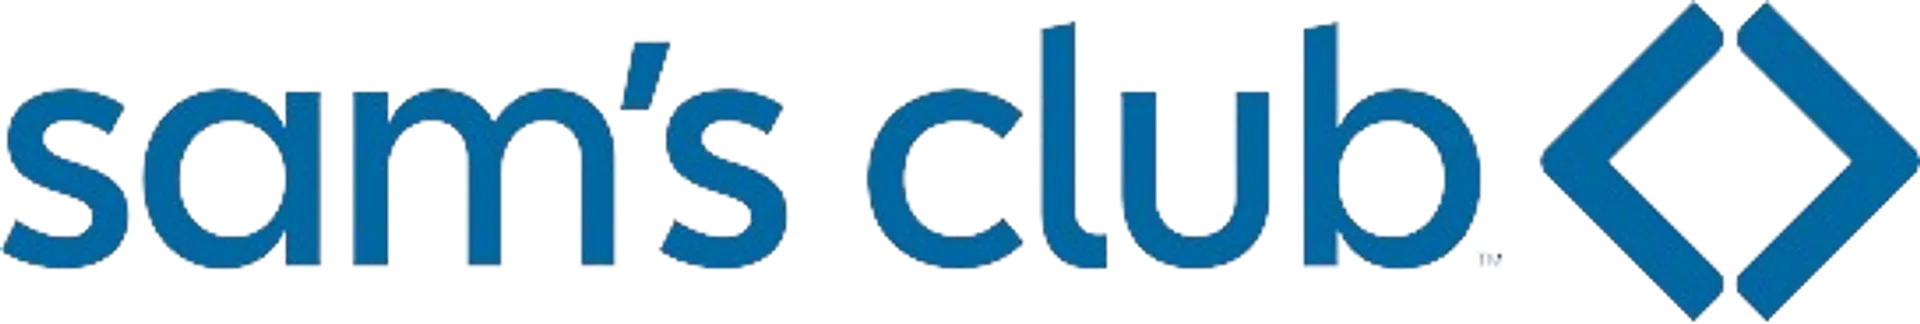 SAM´S CLUB logo de catálogo